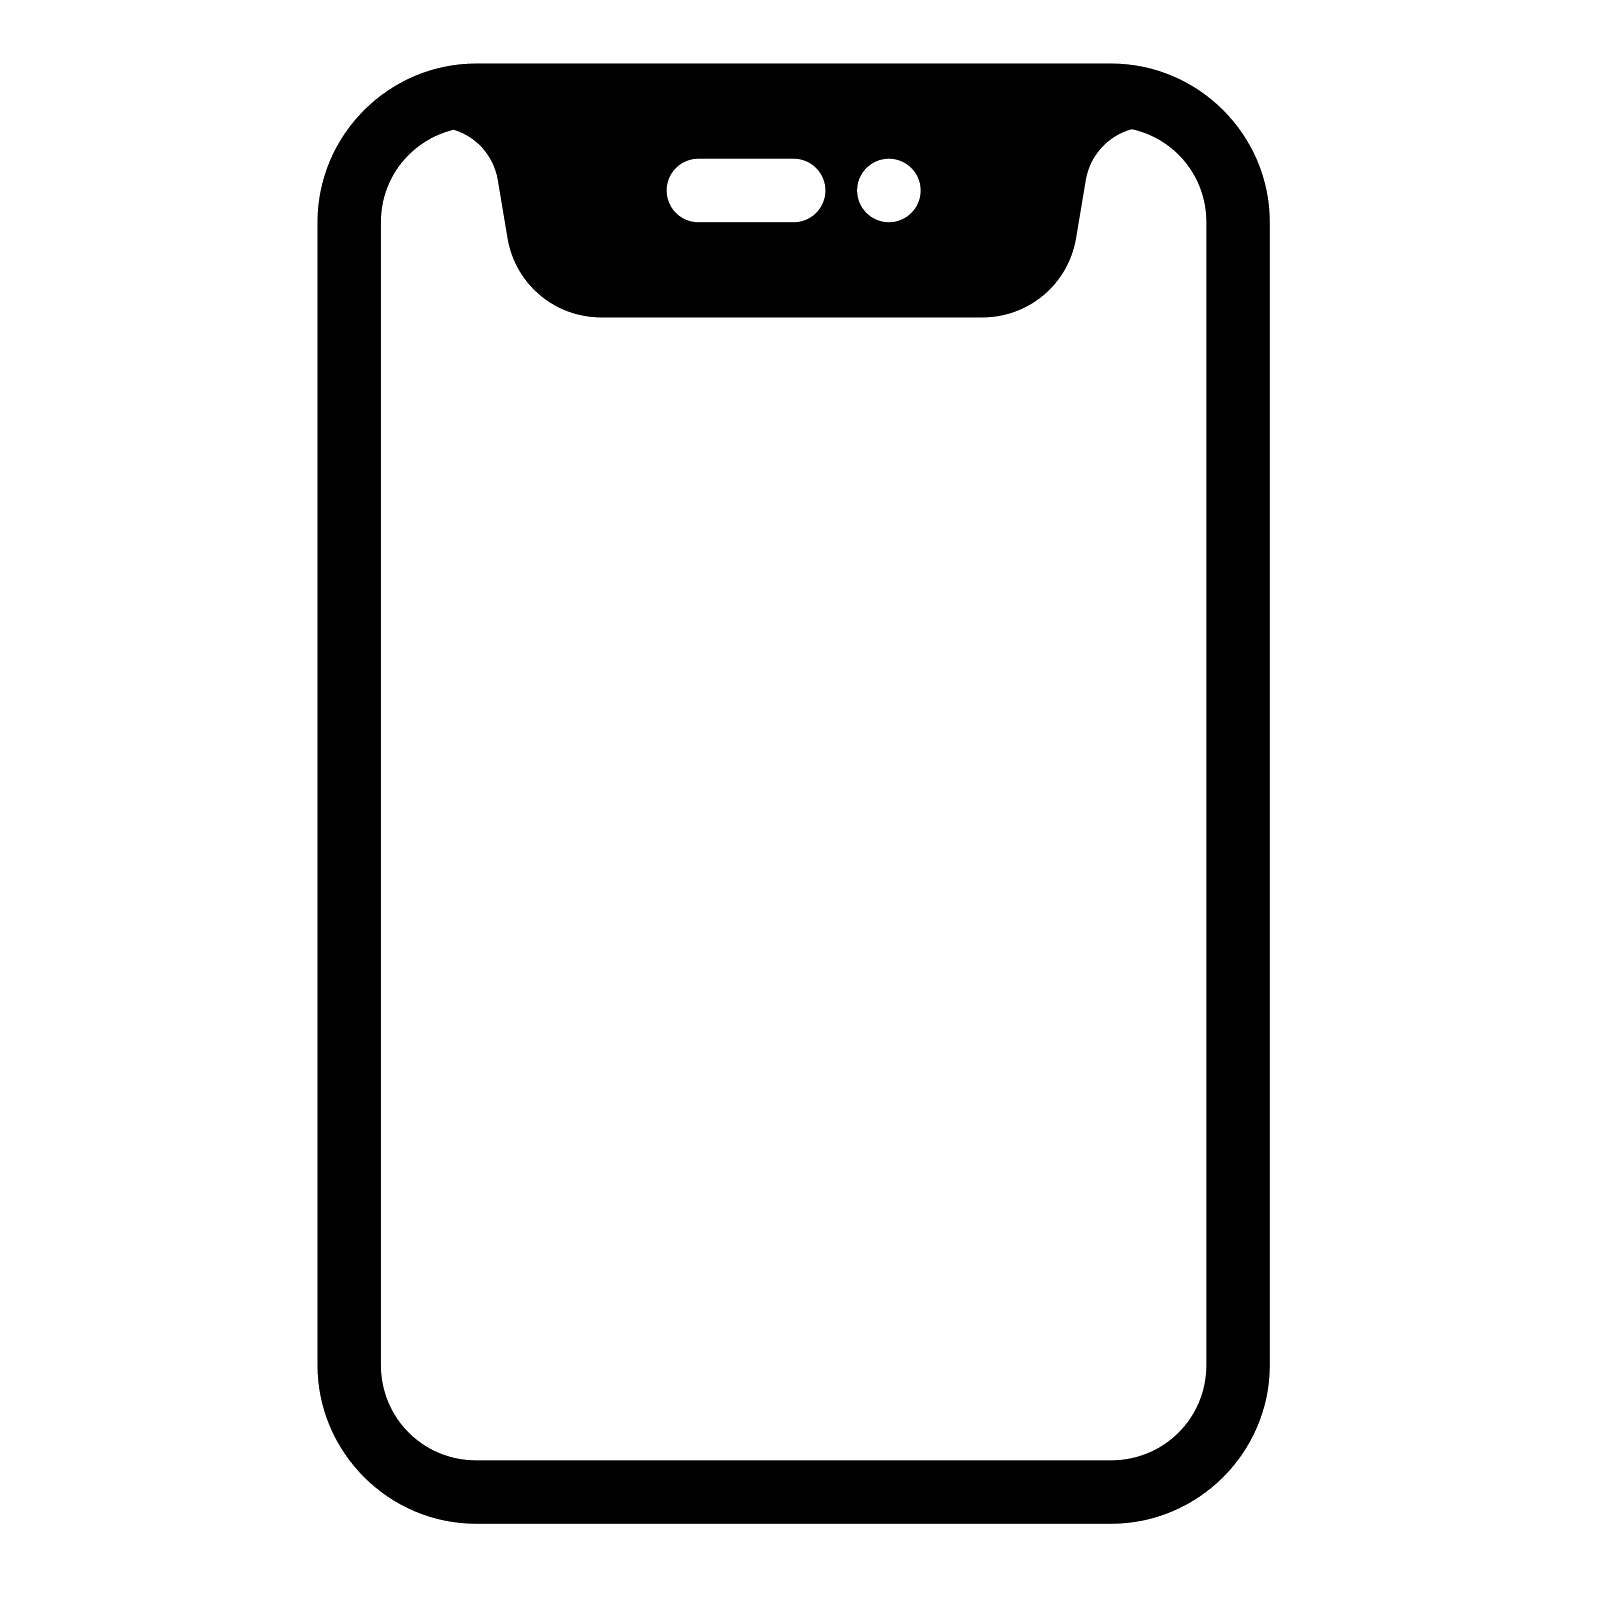 Iphone Imessageapp Icon Logo Image For Free Free Logo Image